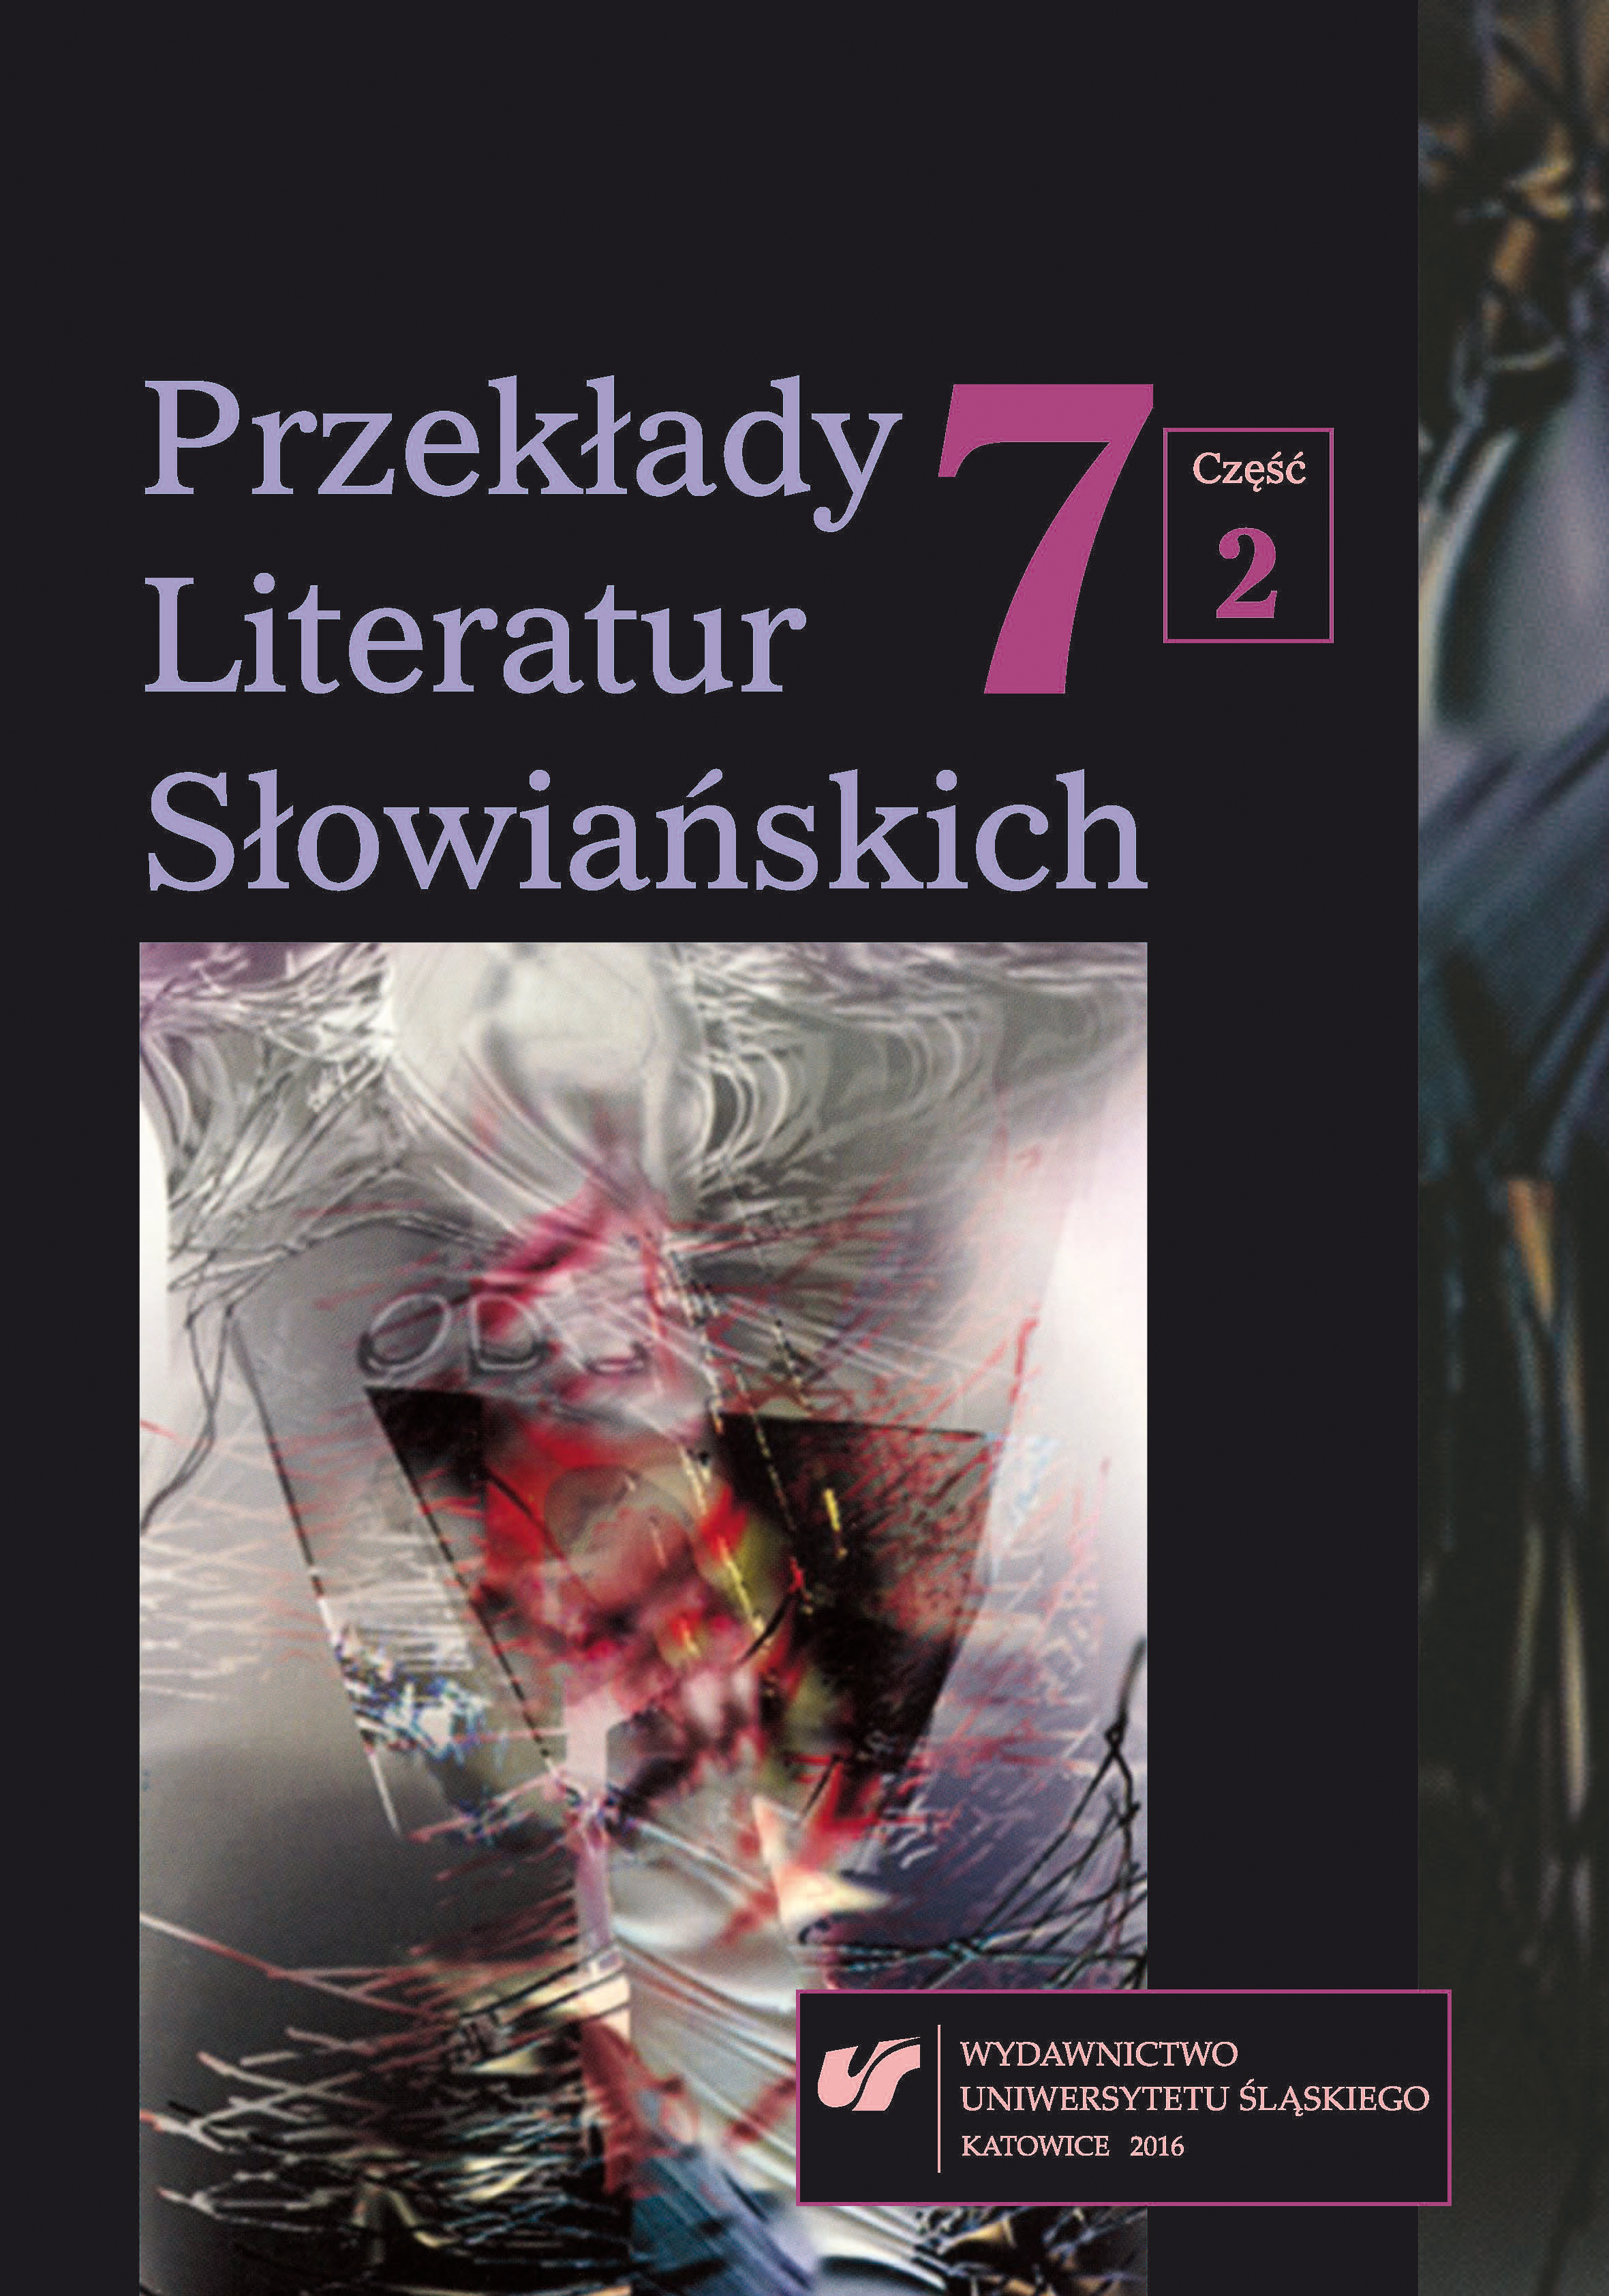 Rola Instytutu Mikołowskiego w upowszechnianiu przekładów literatury słoweńskiej w Polsce w ostatnich latach